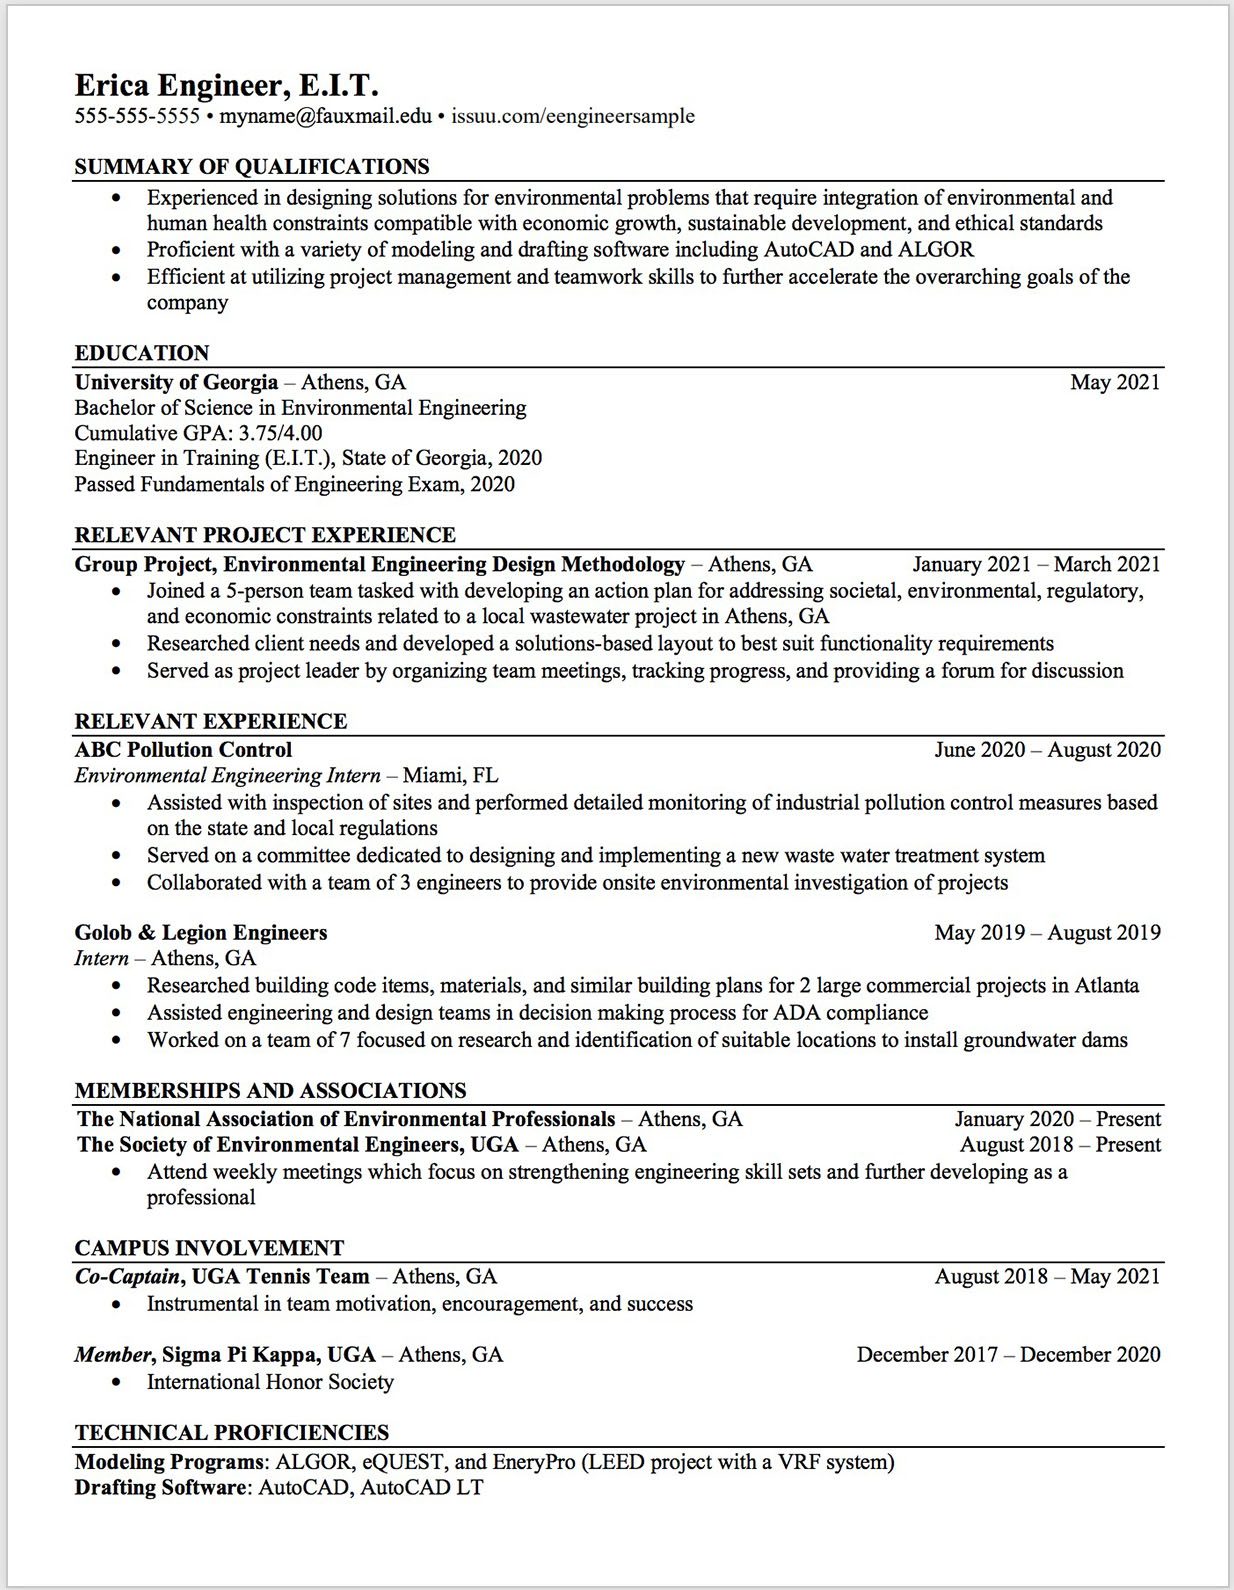 Engineering resume template